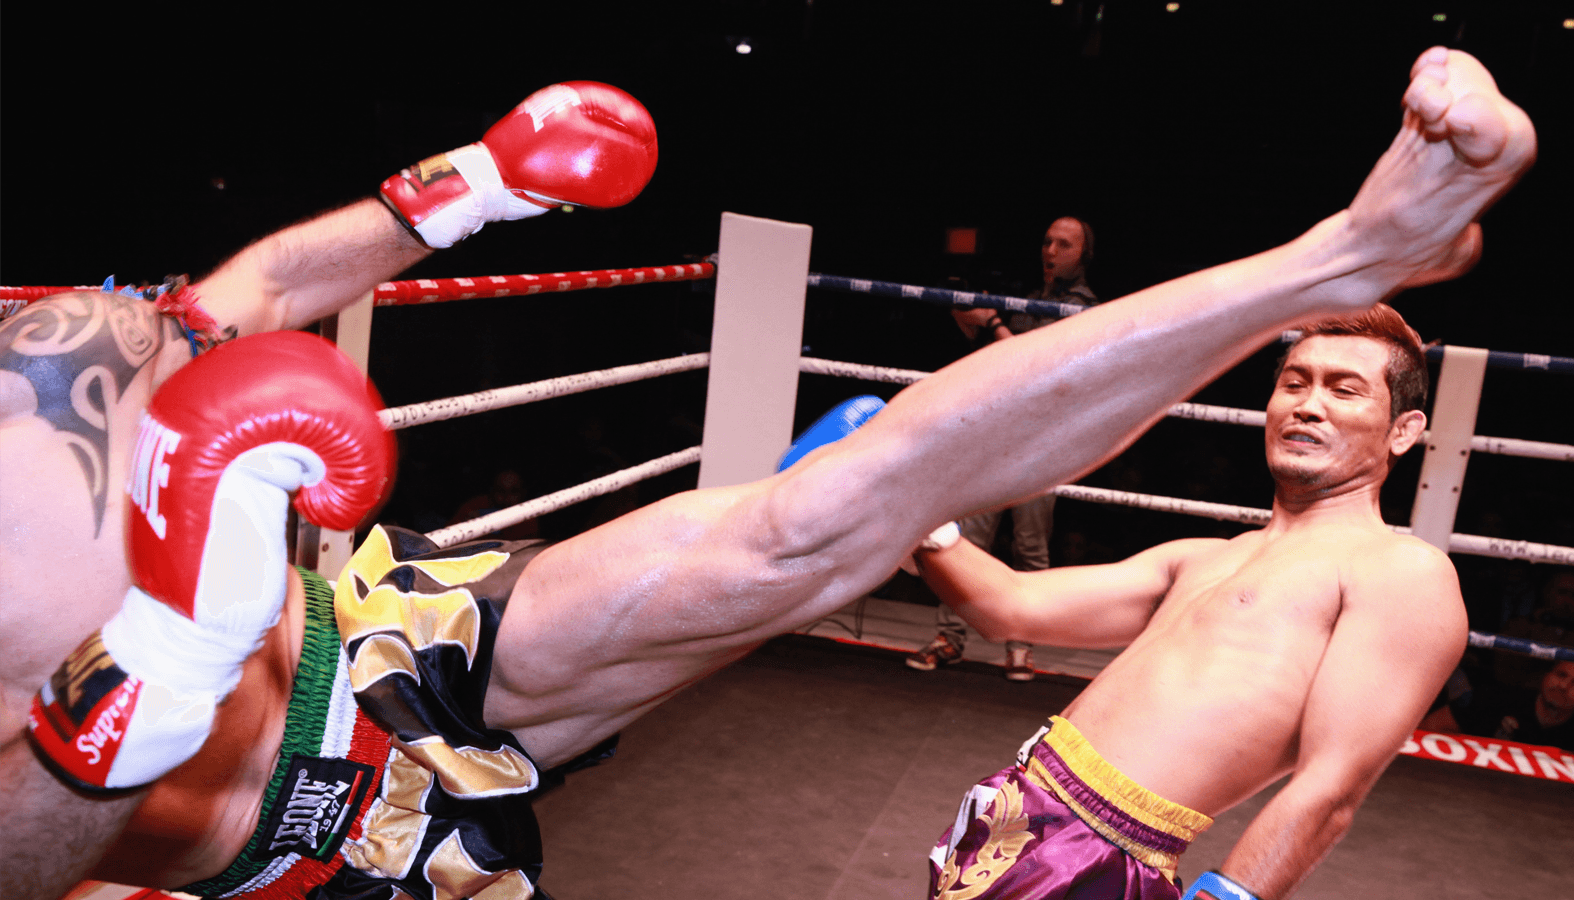 Muay Thái hay Thai boxing là một môn võ thuật cổ truyền của Thái Lan. Ngày nay, võ muay thái trở thành một môn thể thao rèn luyện sức khỏe và tự vệ thú vị được giới trẻ ưa thích.